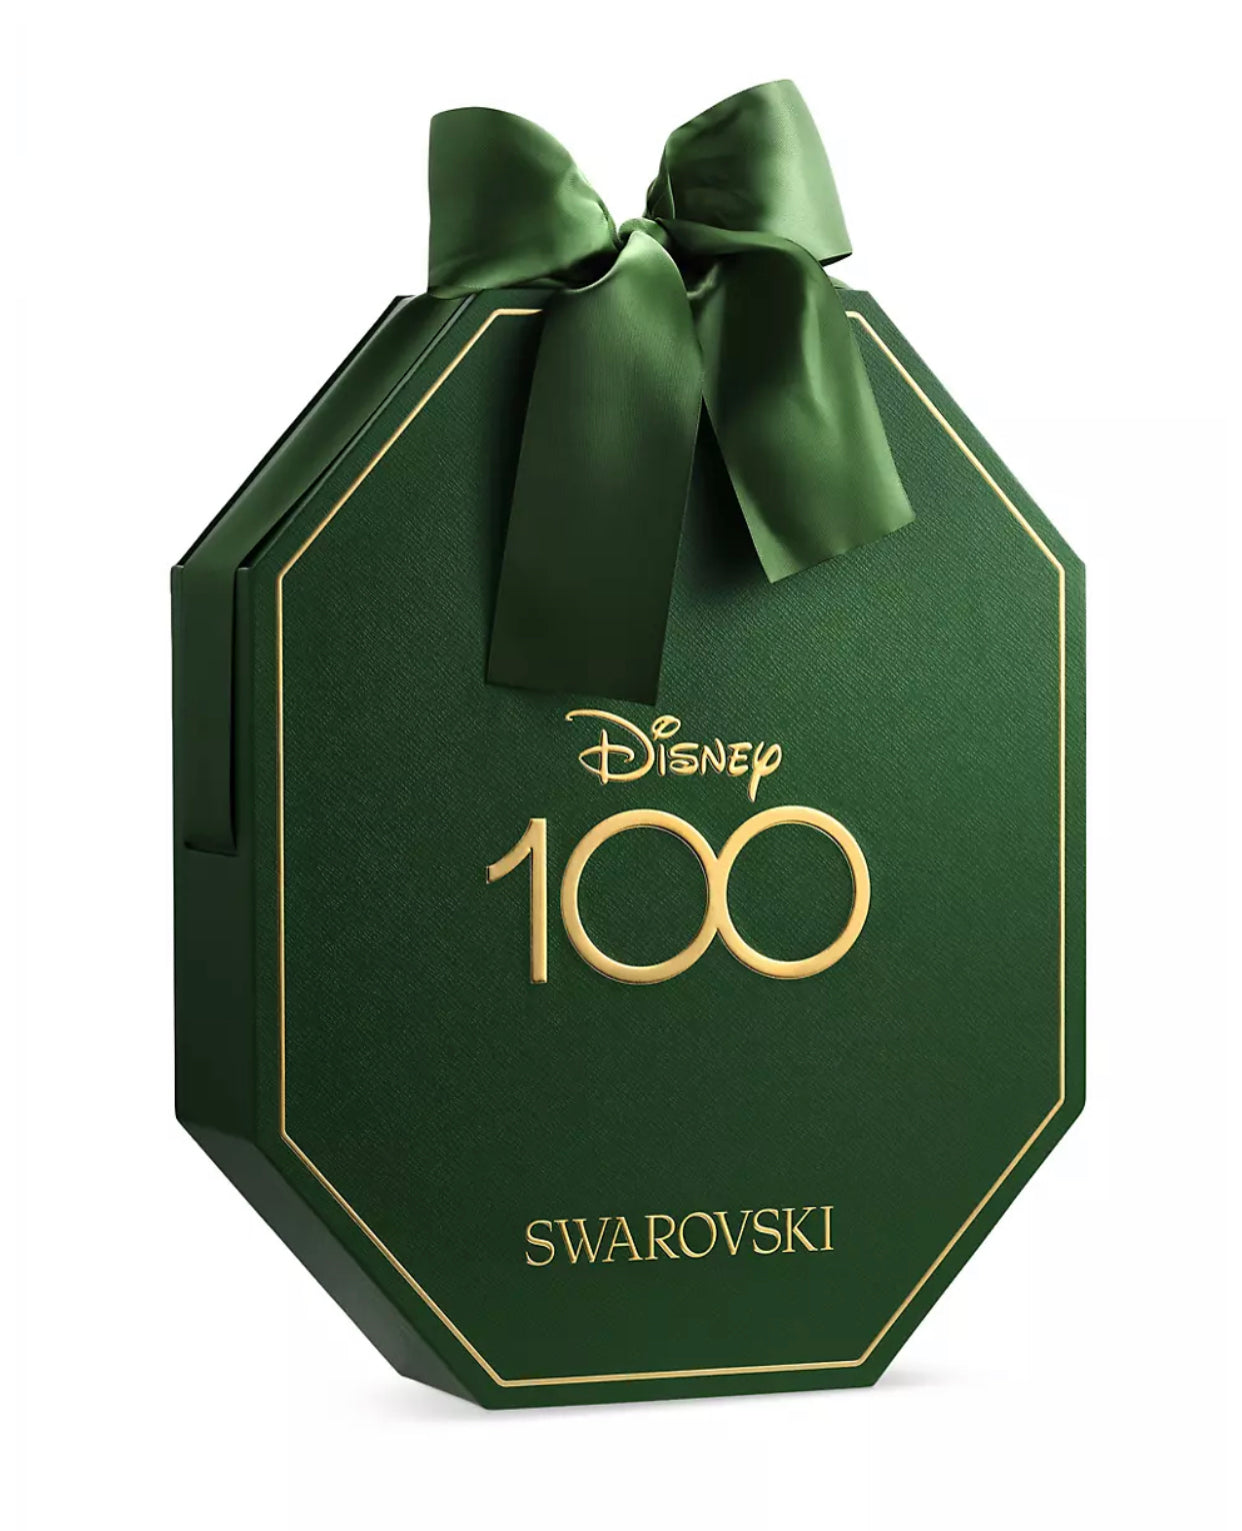 Swarovski, Disney 100th Anniversary Advent Calendar